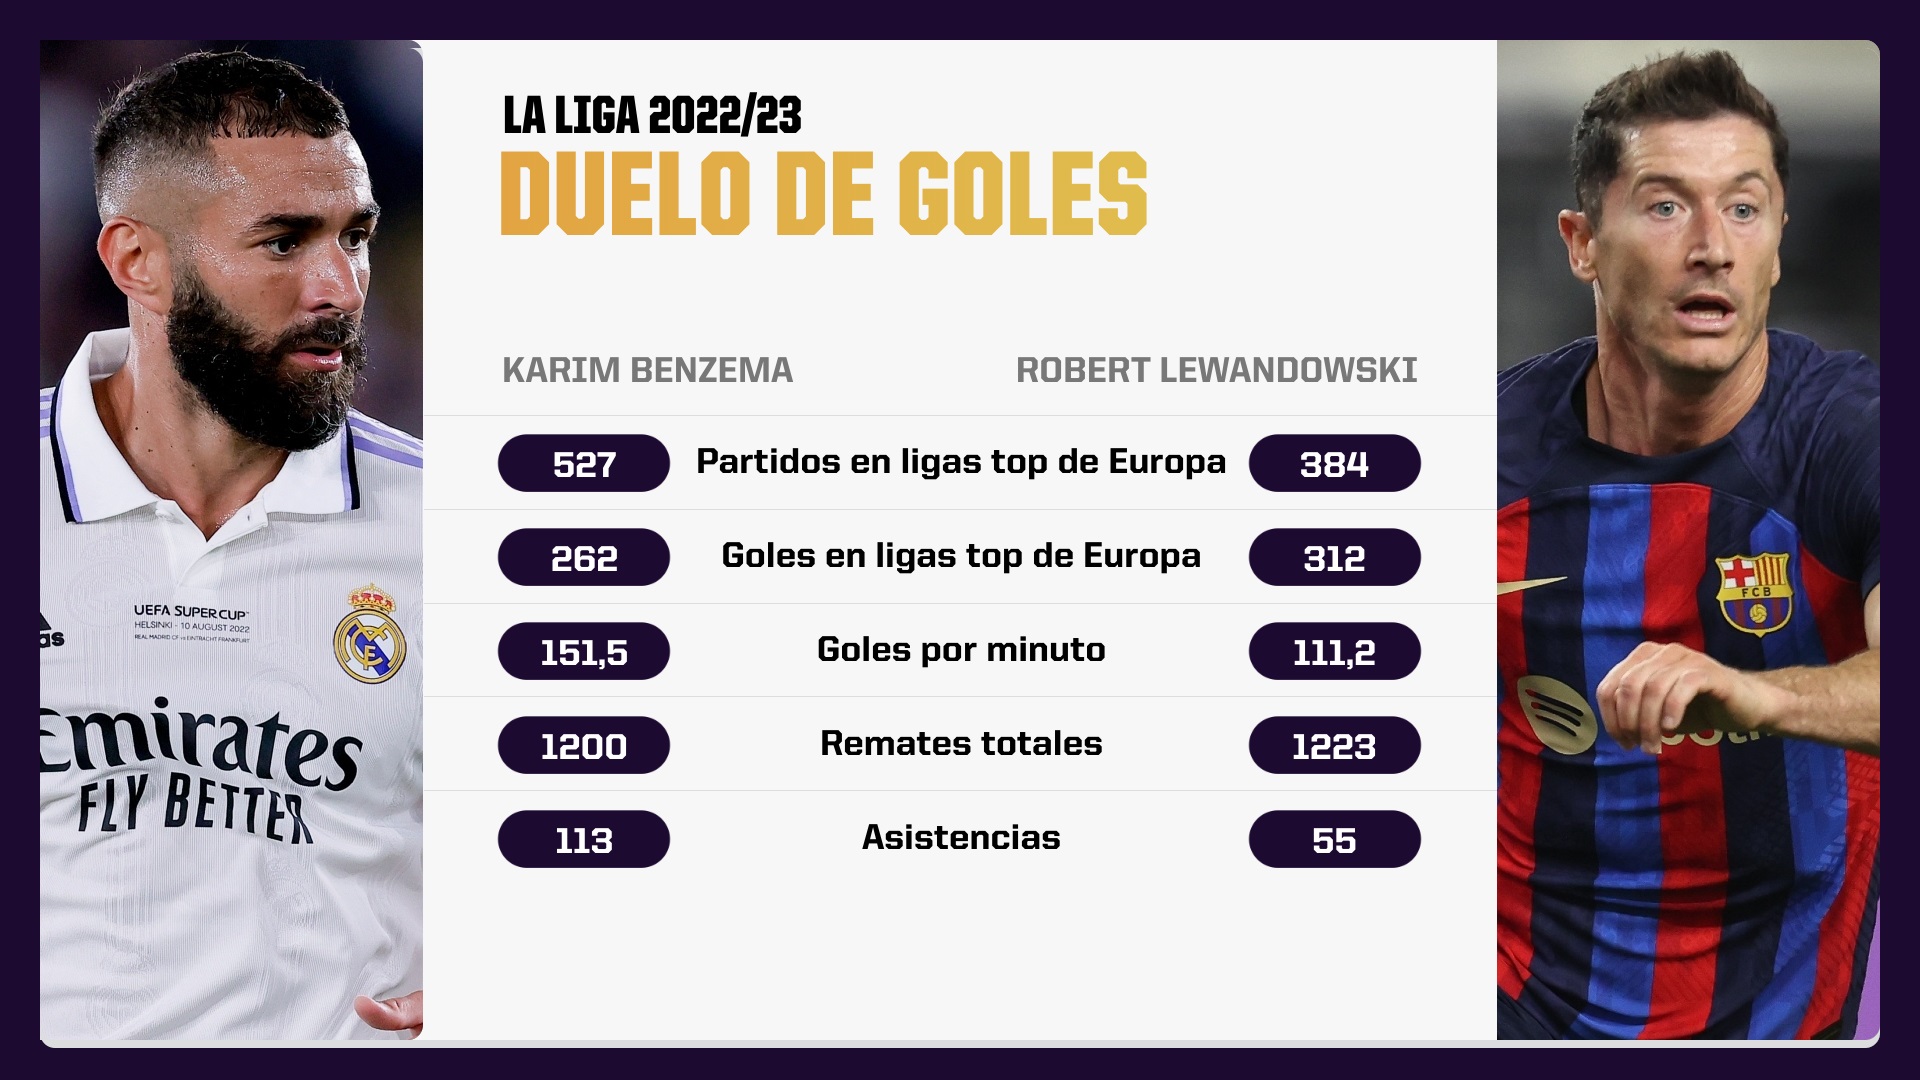 La Liga propone una batalla de goleadores con Benzema y Lewandowski |  DSPORTS Noticia